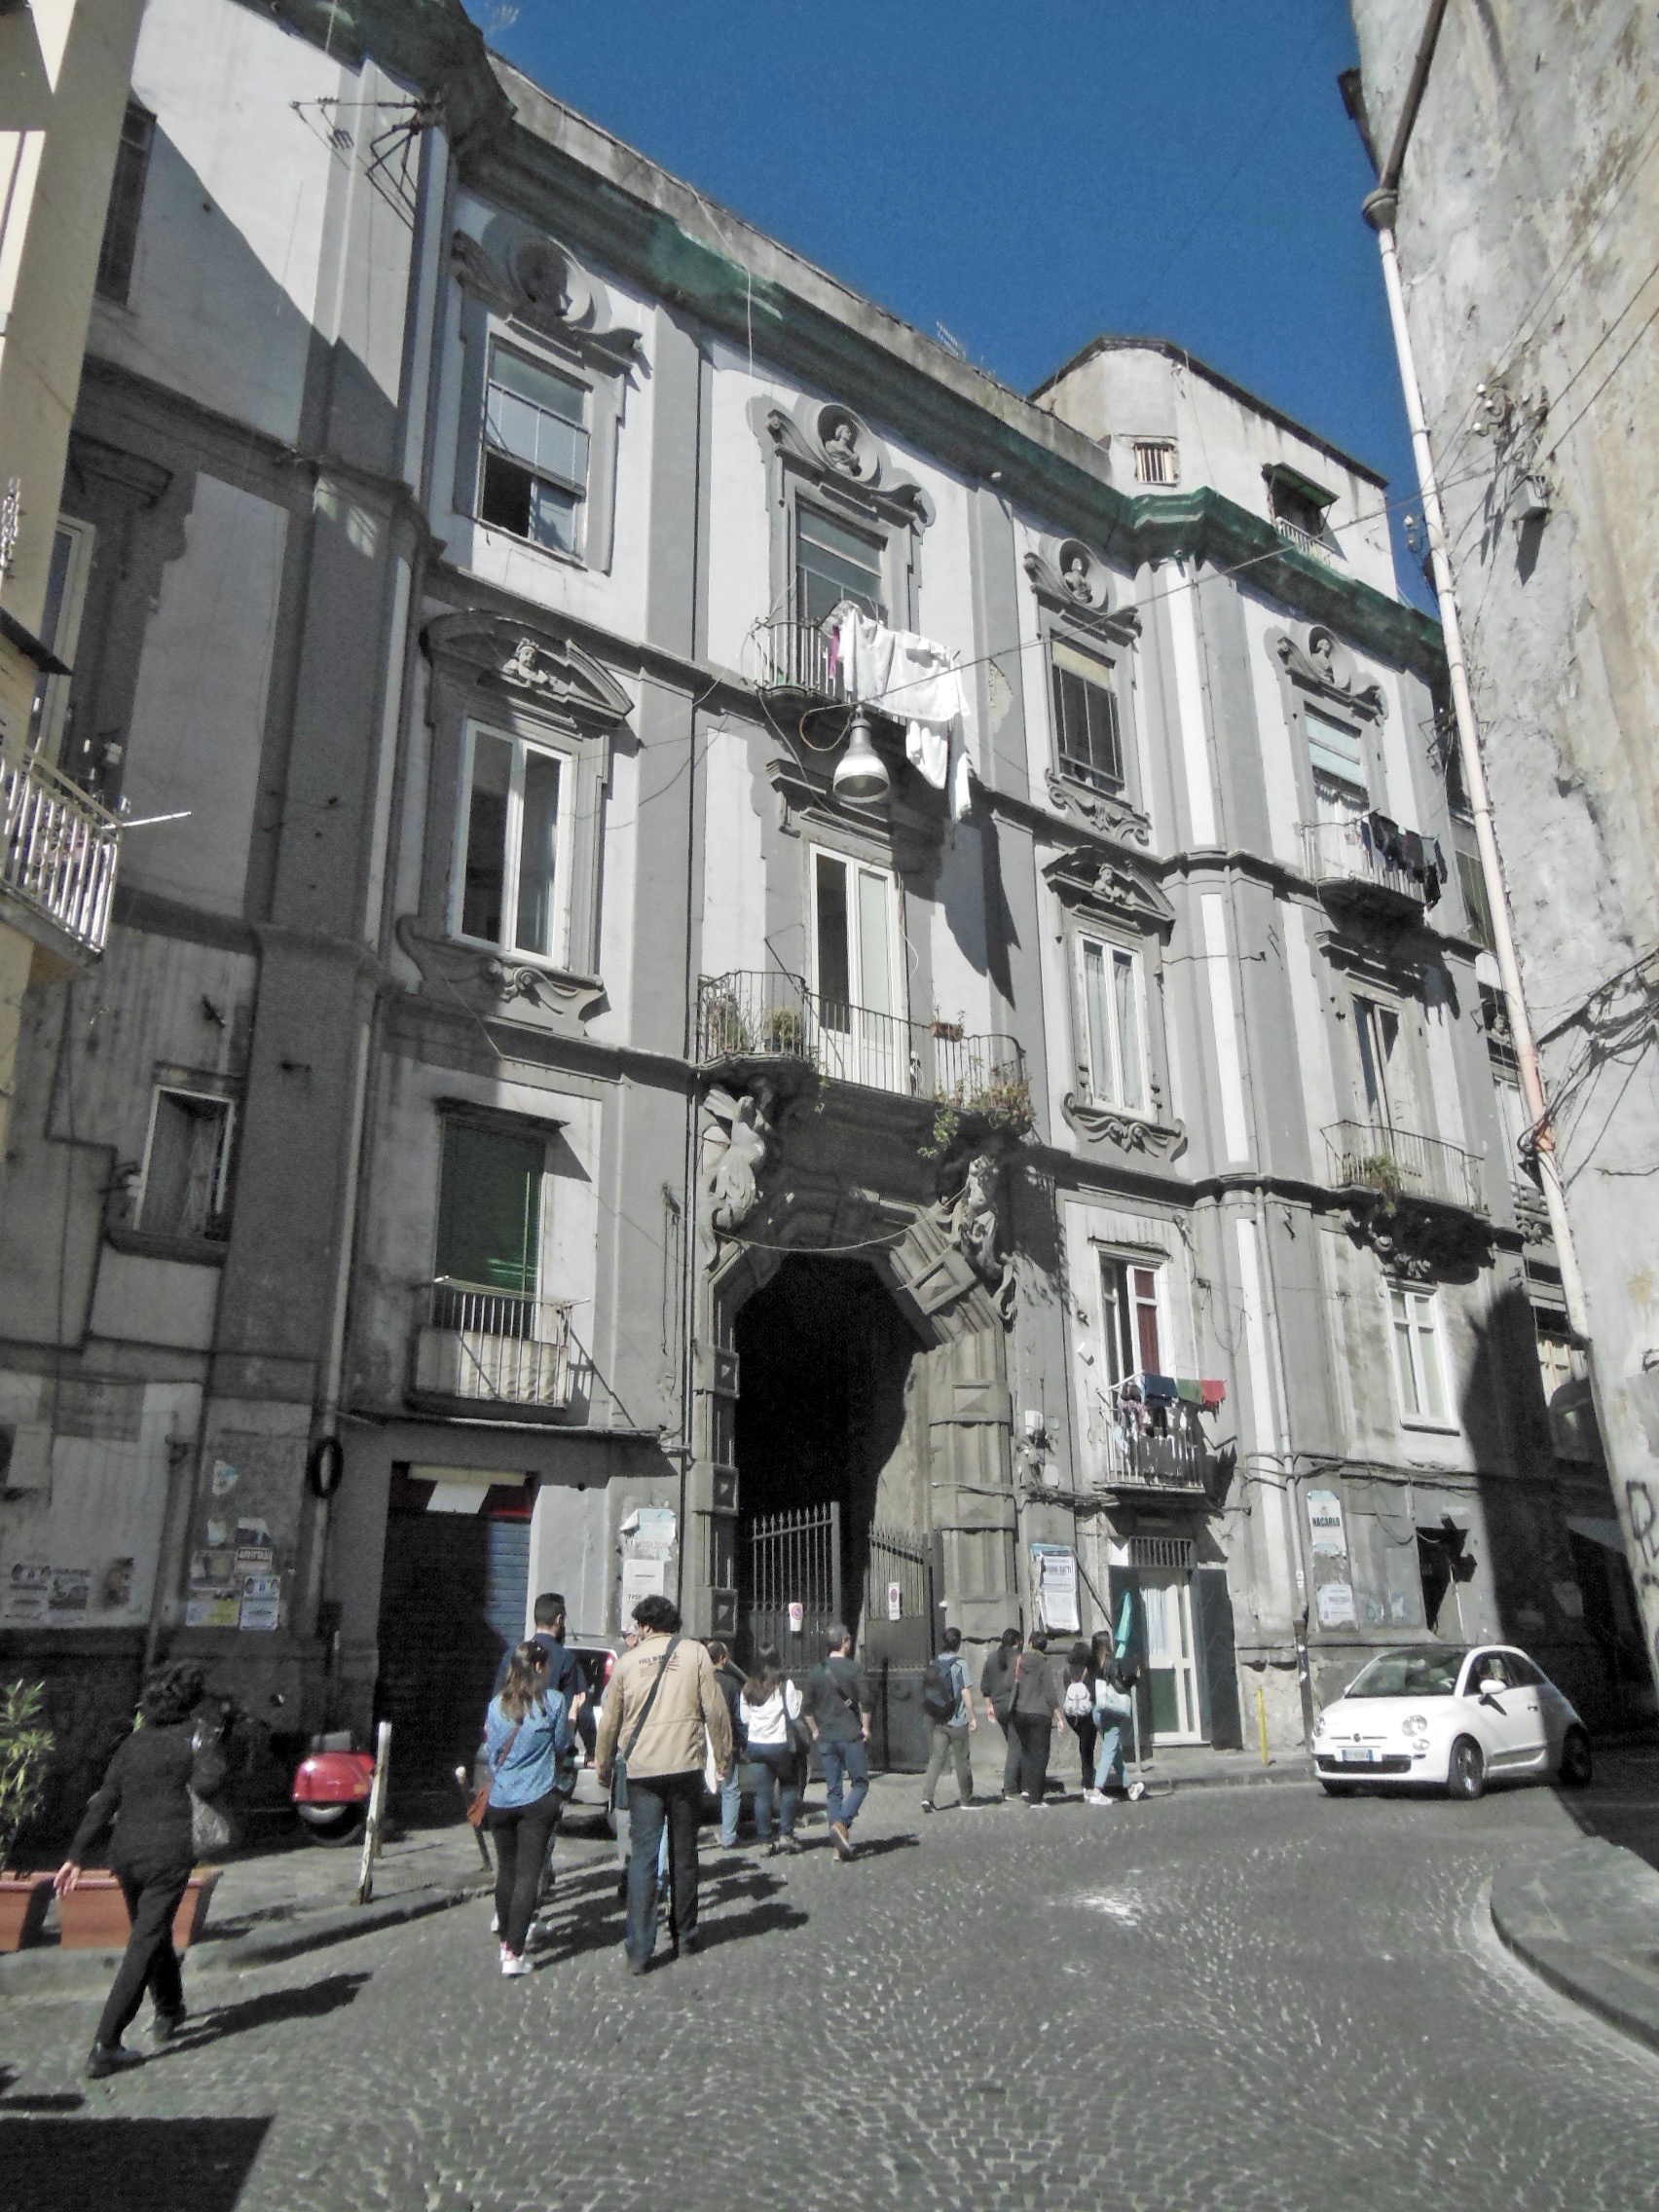 MM, Napoli, palazzo Sanfelice (rione Sanità), facciata, 2017, fotografia digitale